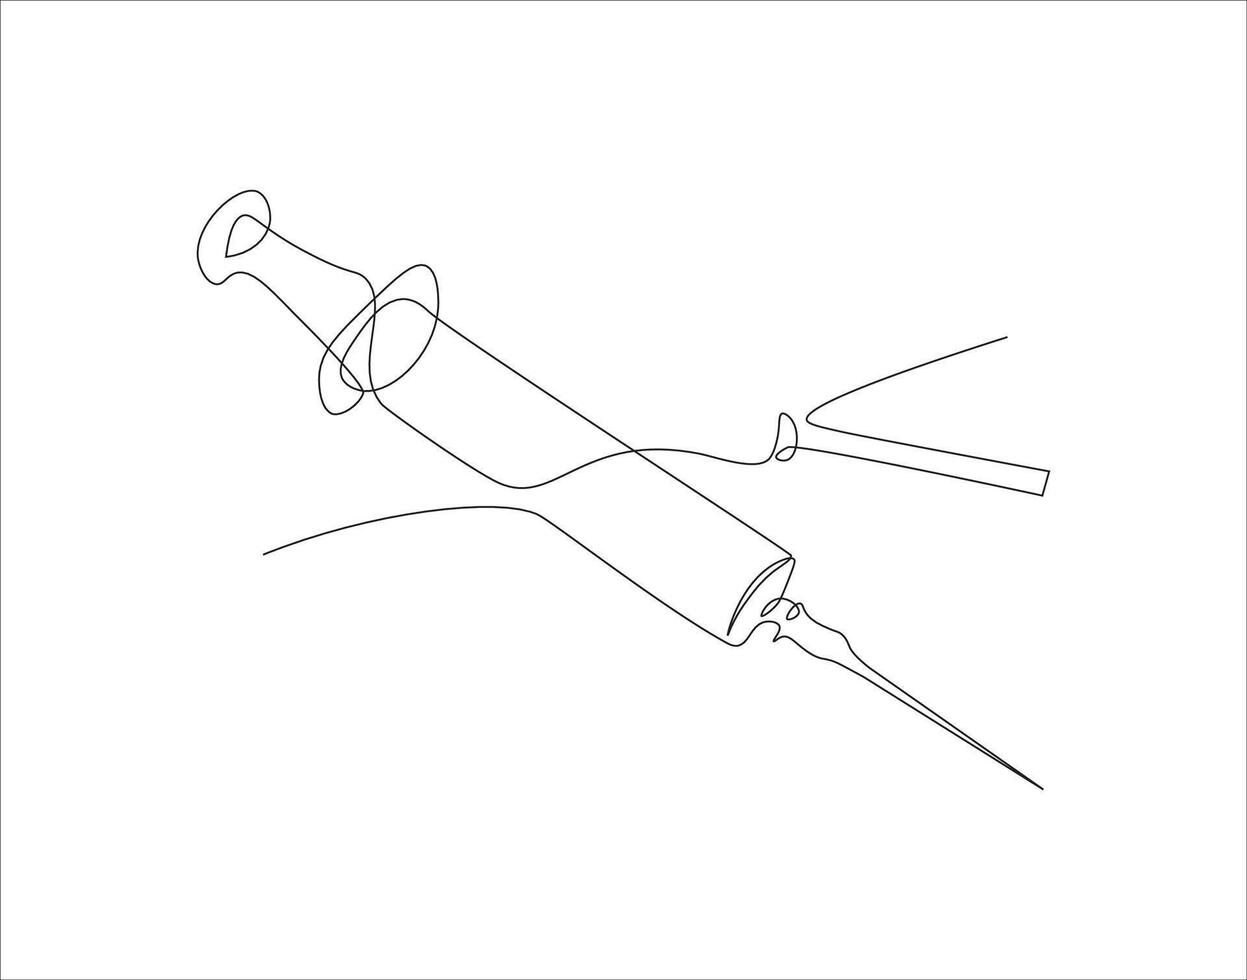 doorlopend lijn tekening van injectiespuit voor injecties. een lijn van spuit. injecteren doorlopend lijn kunst. bewerkbare schets. vector